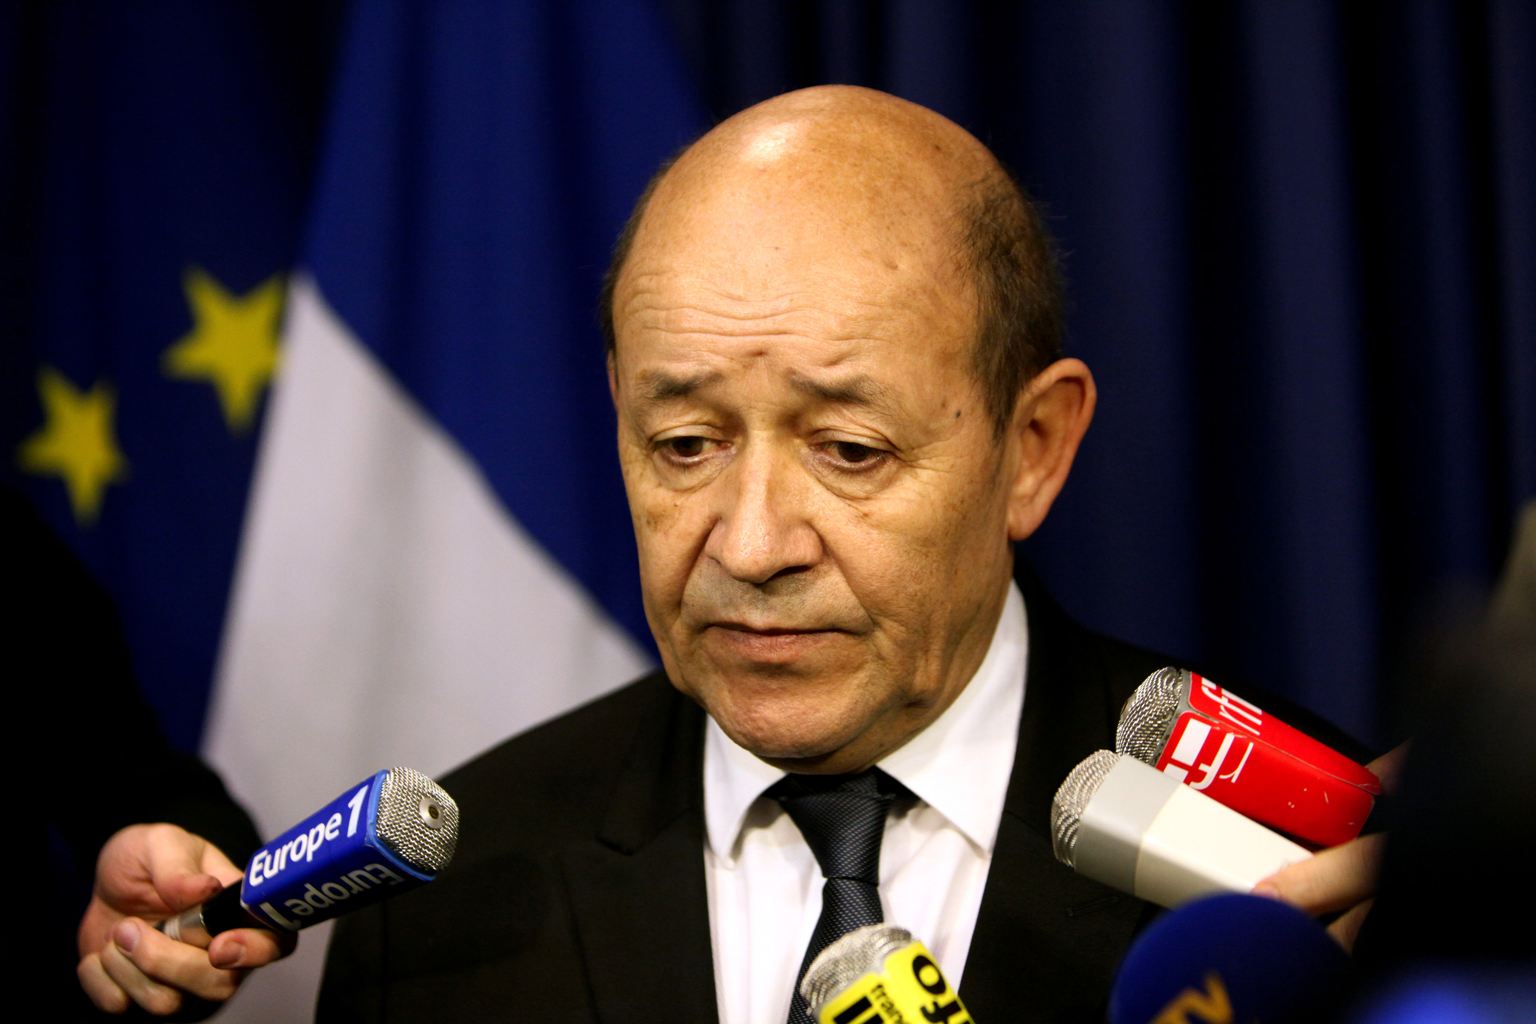   فرنسا تدين حادث المنيا الإرهابى وتصفه بـ«الجبان»